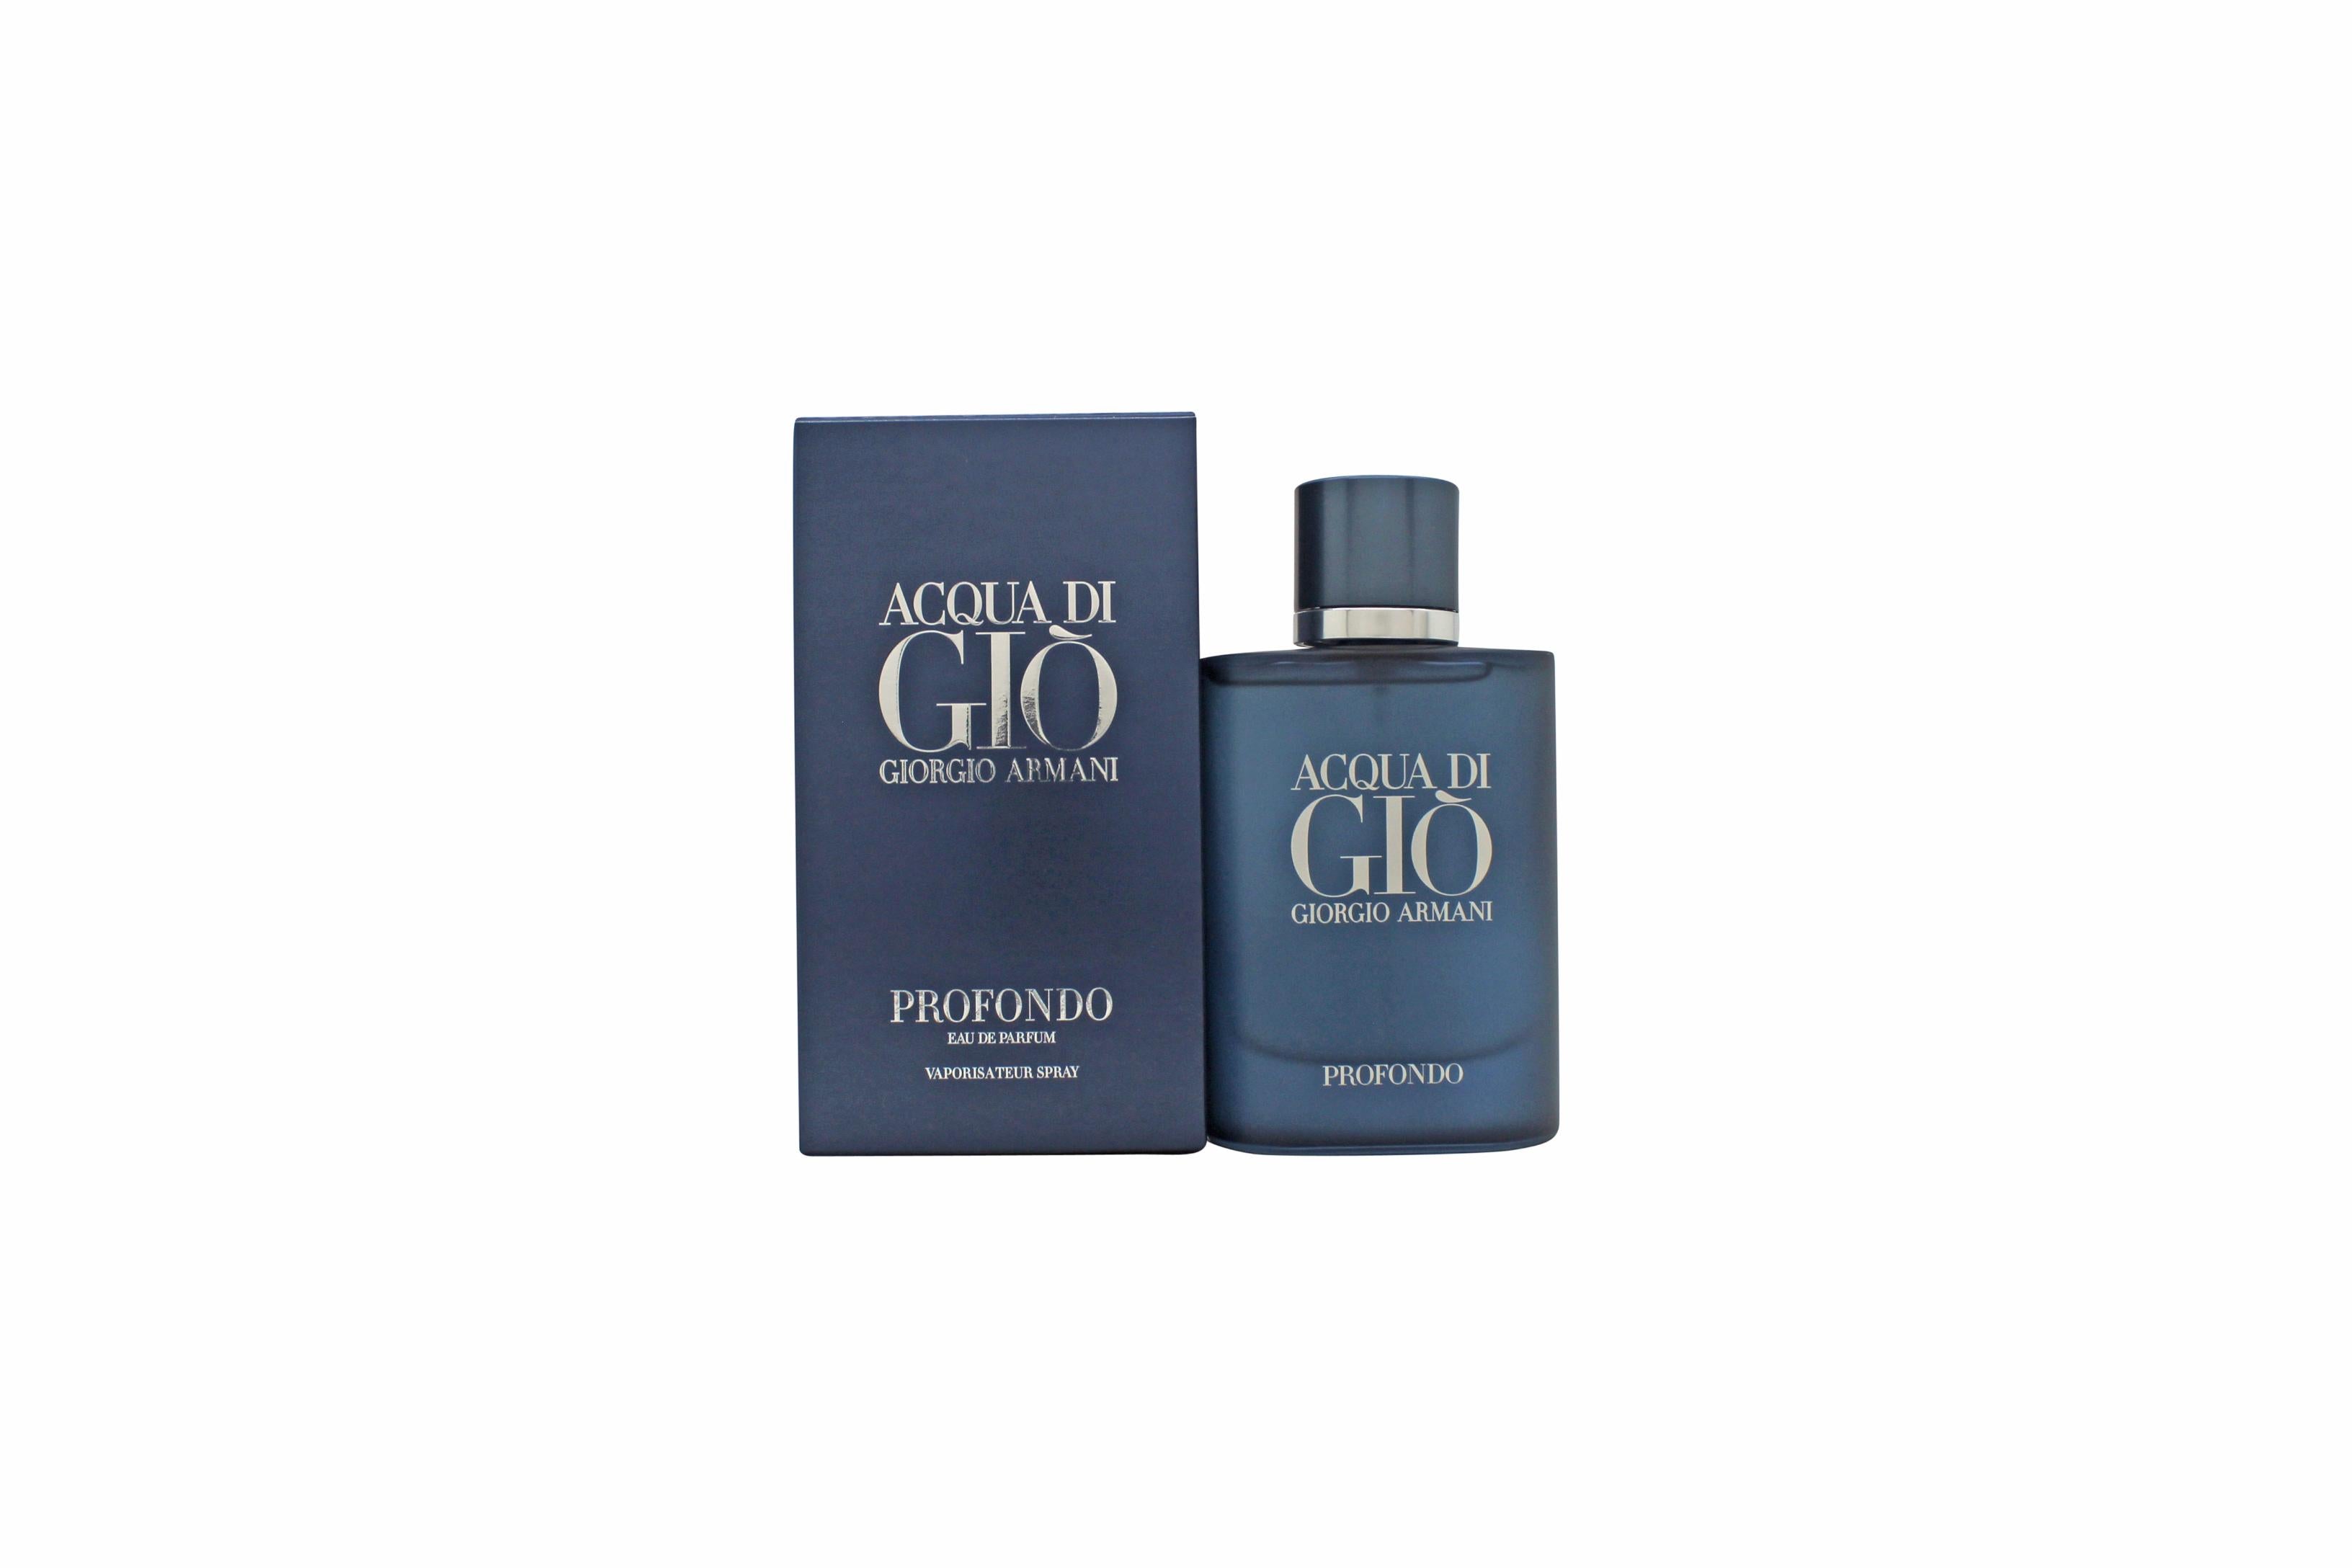 Giorgio Armani Acqua di Giò Profondo Eau de Parfum 75ml Spray - Peacock Bazaar